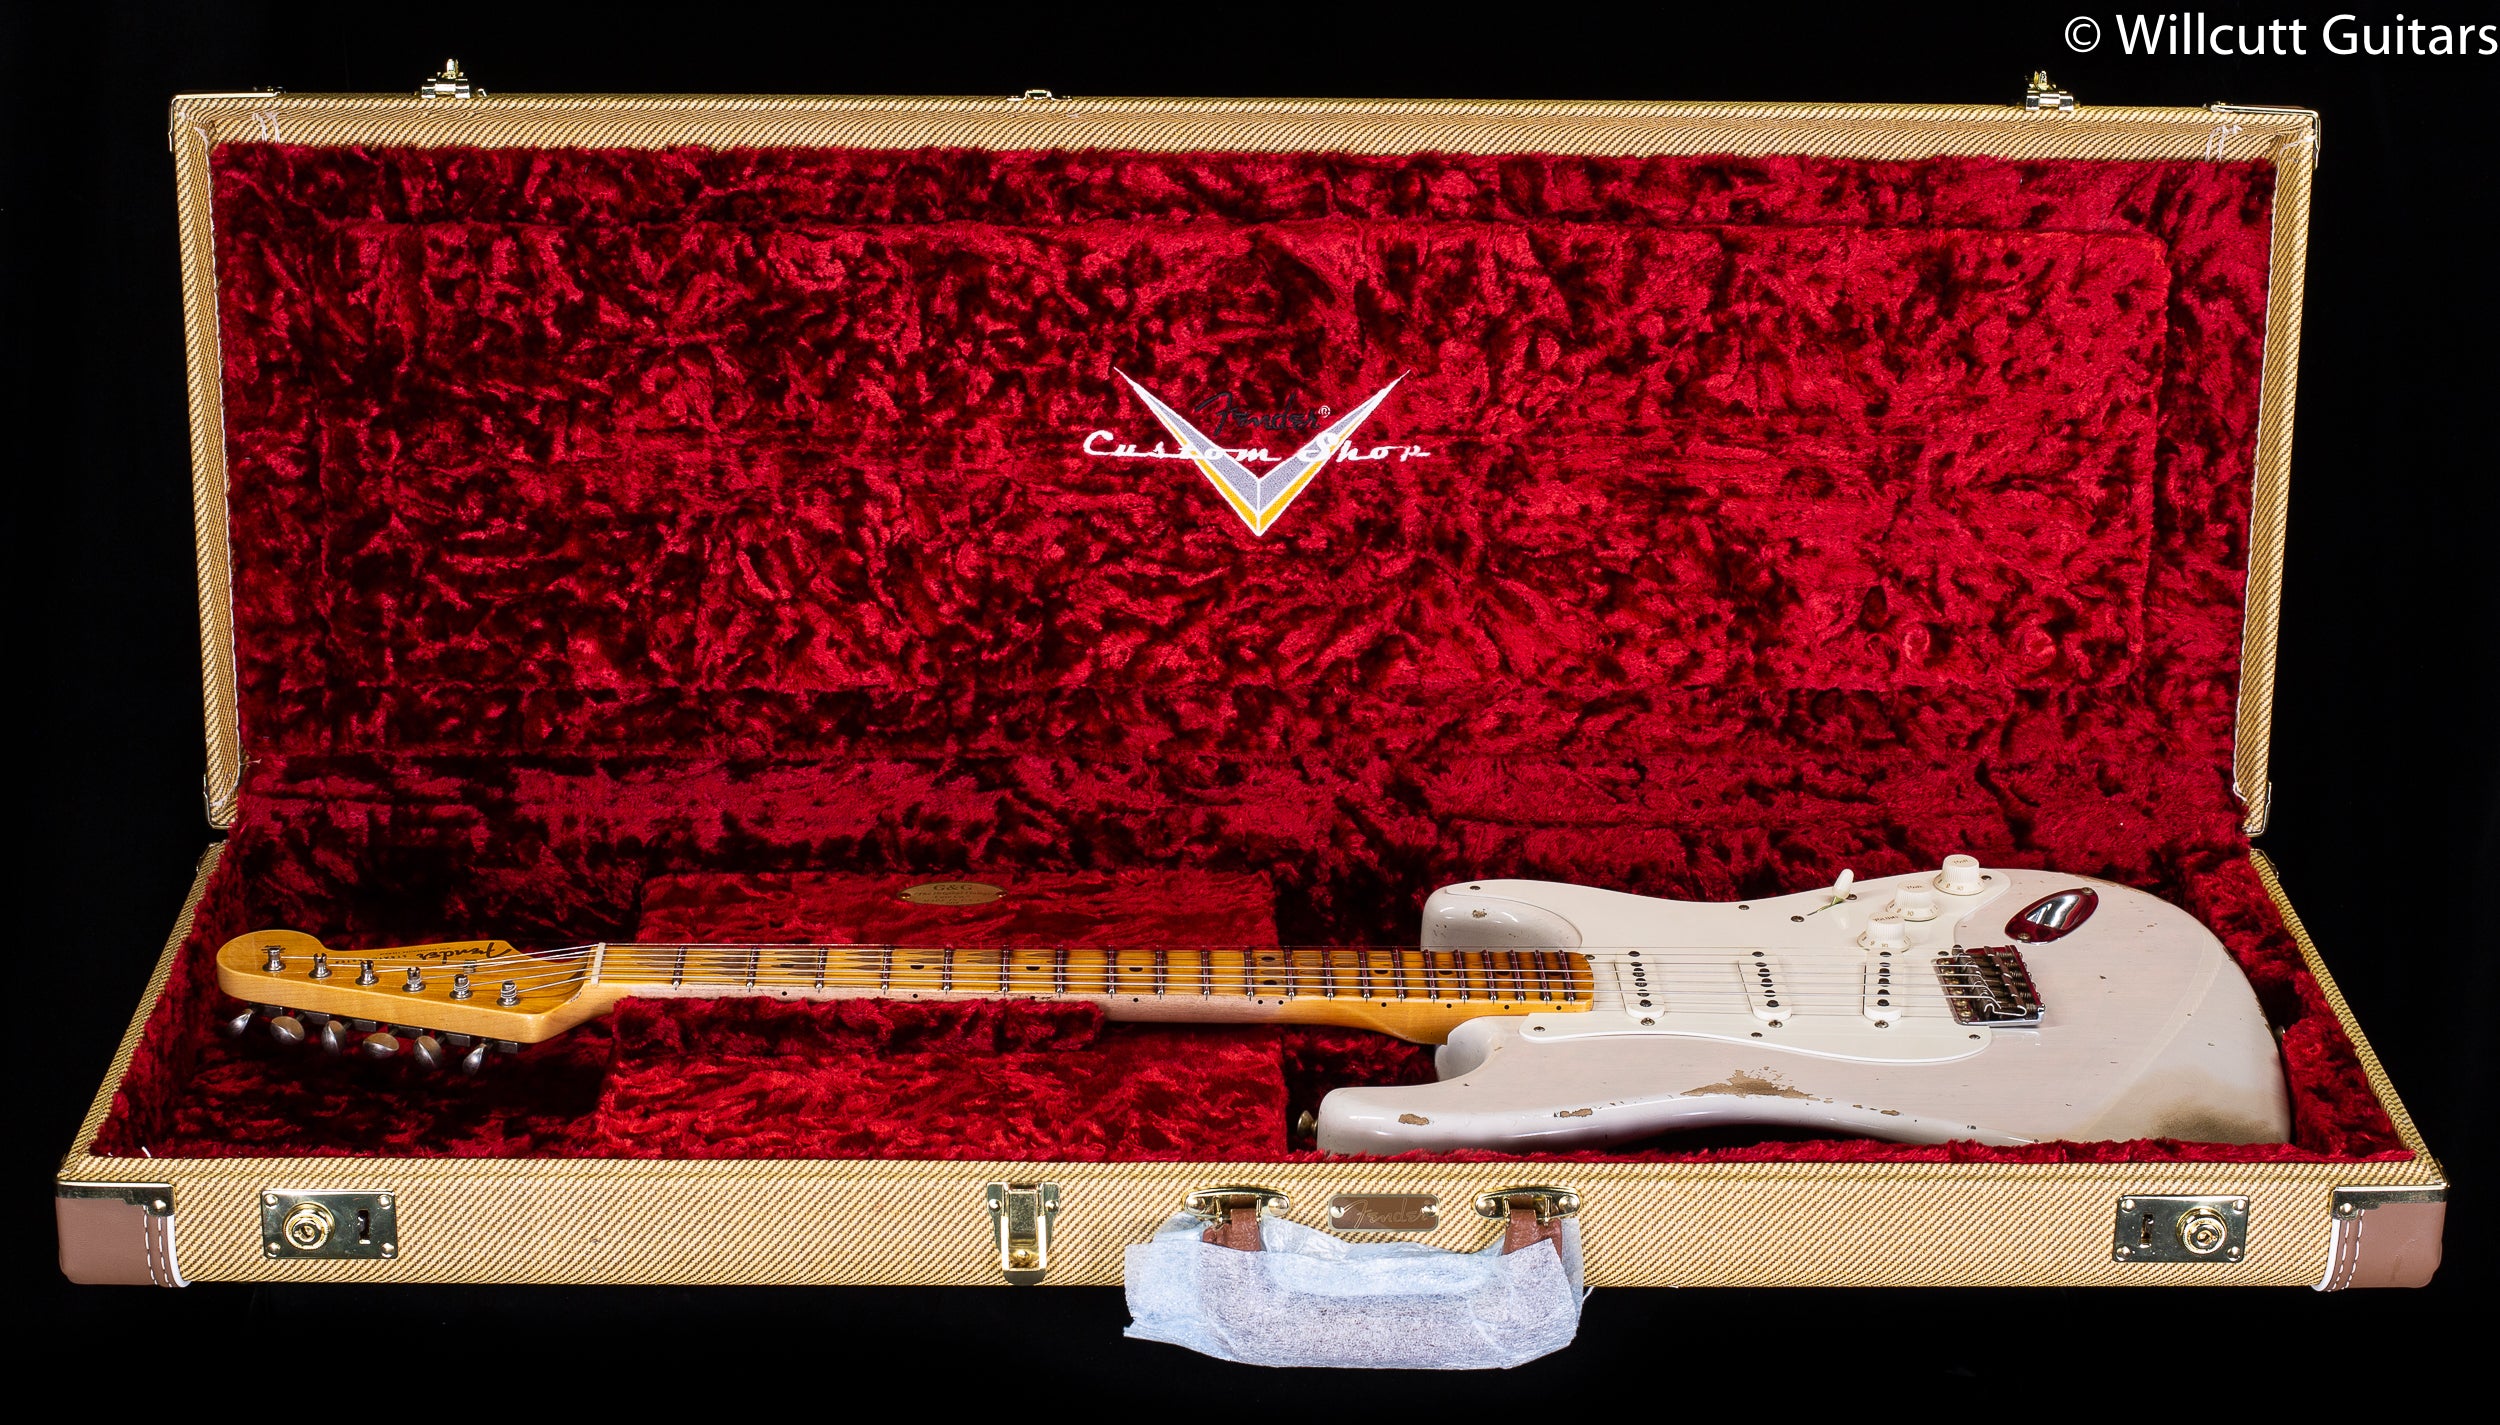 Fender Custom Shop 1956 Stratocaster Heavy Relic White Blonde (591